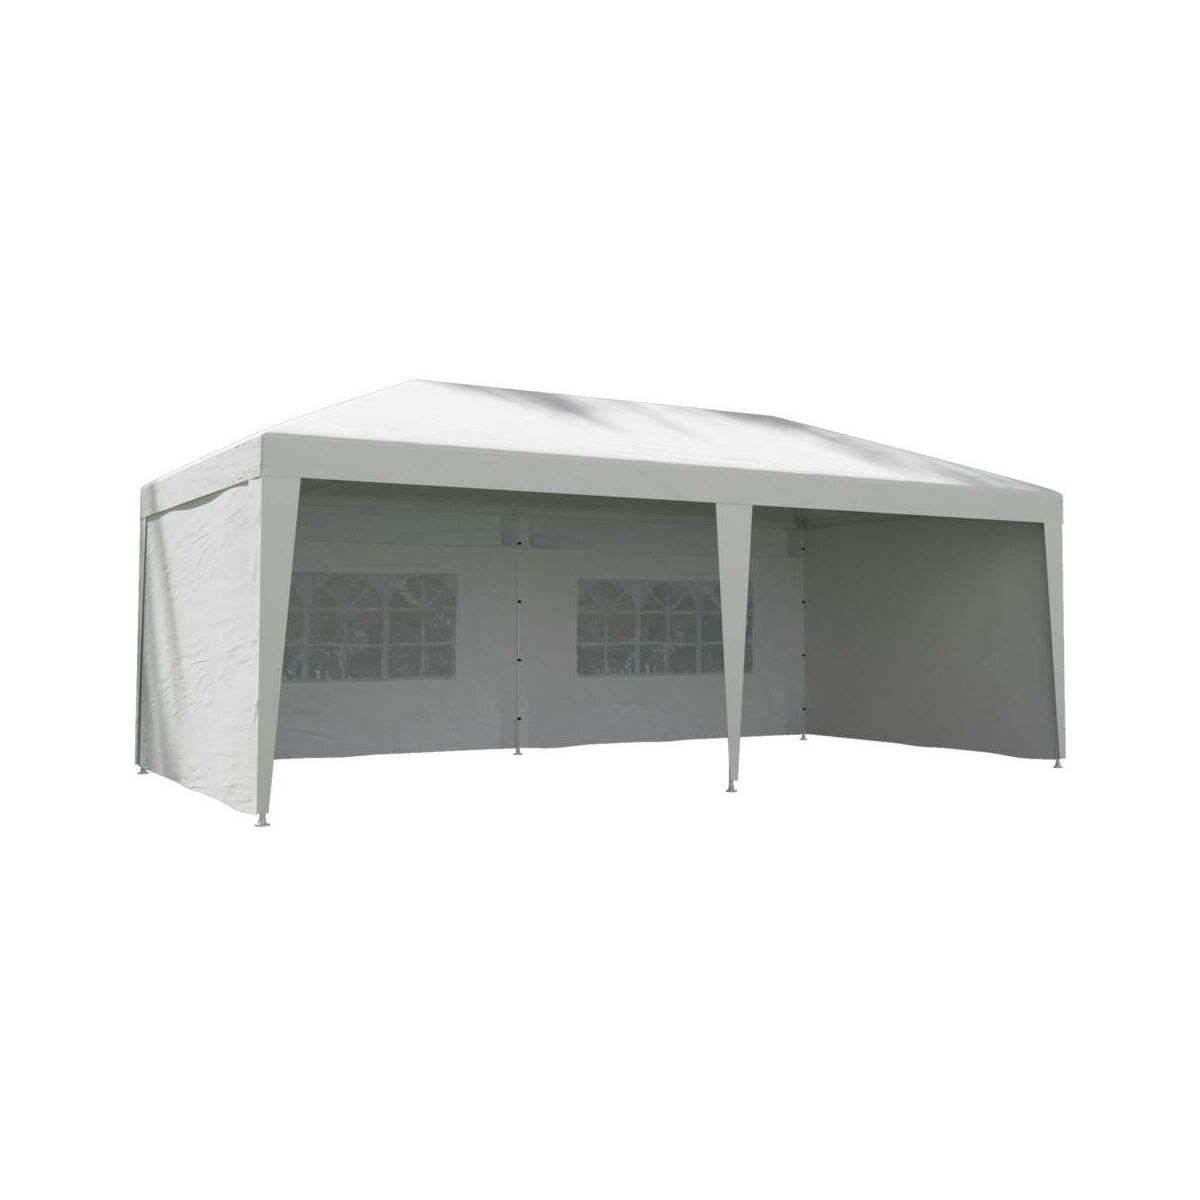 Namiot Ogrodowy 3 X 6 M Bruma Bialy Z Oknami Pawilony I Namioty Ogrodowe W Atrakcyjnej Cenie W Sklepach Leroy Merlin